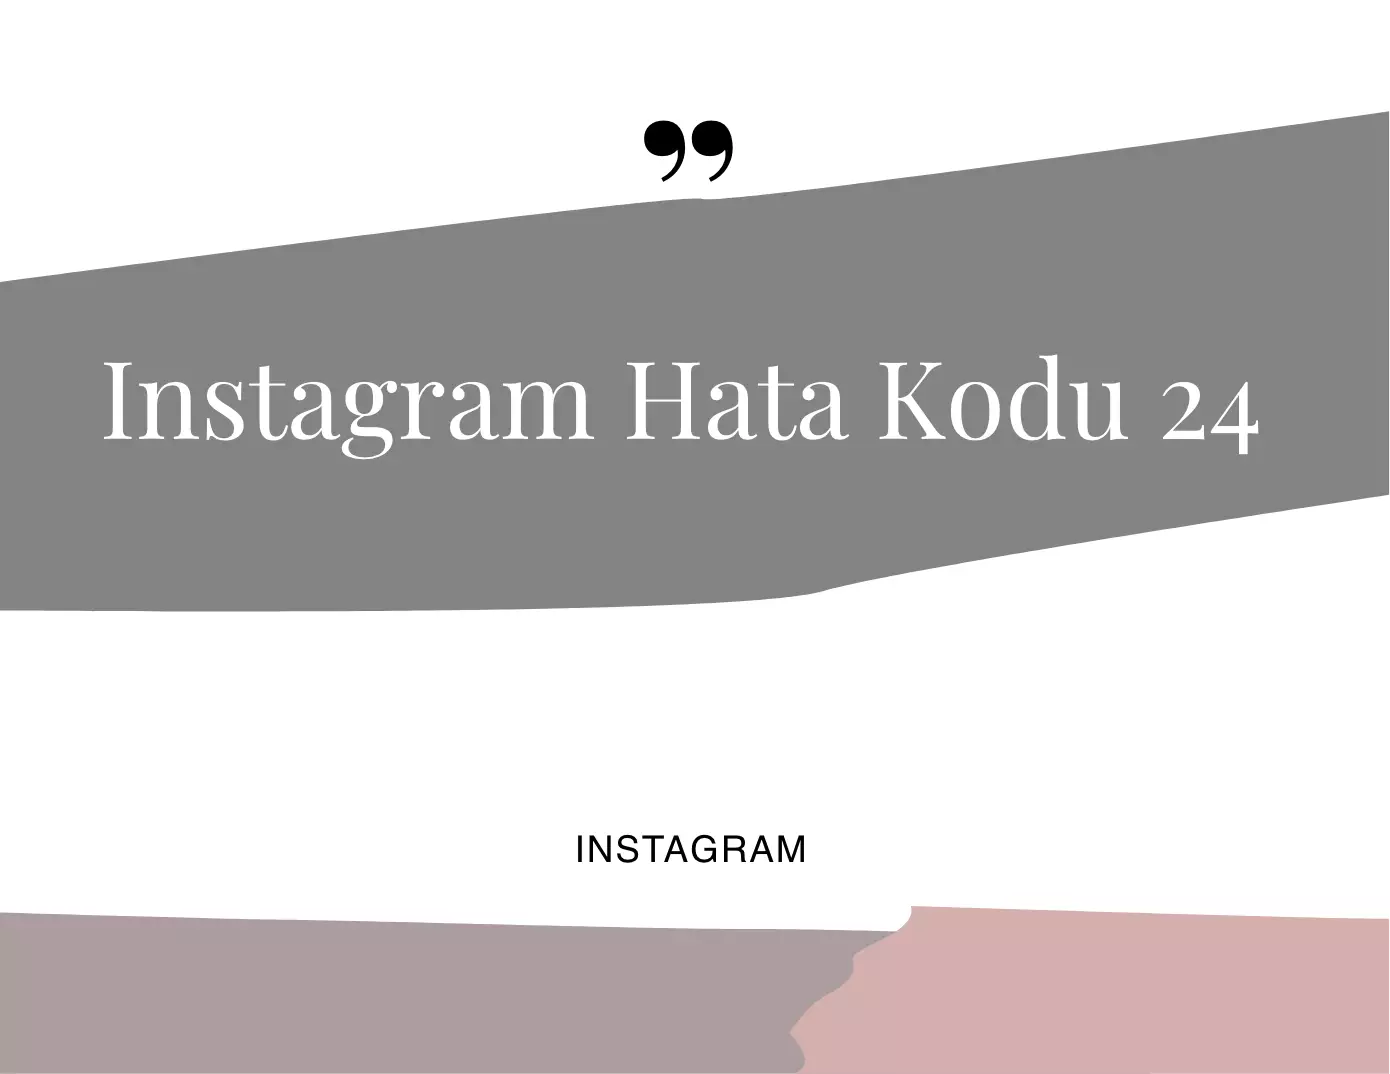 Instagram Hata Kodu 24 Nasıl Çözülür?